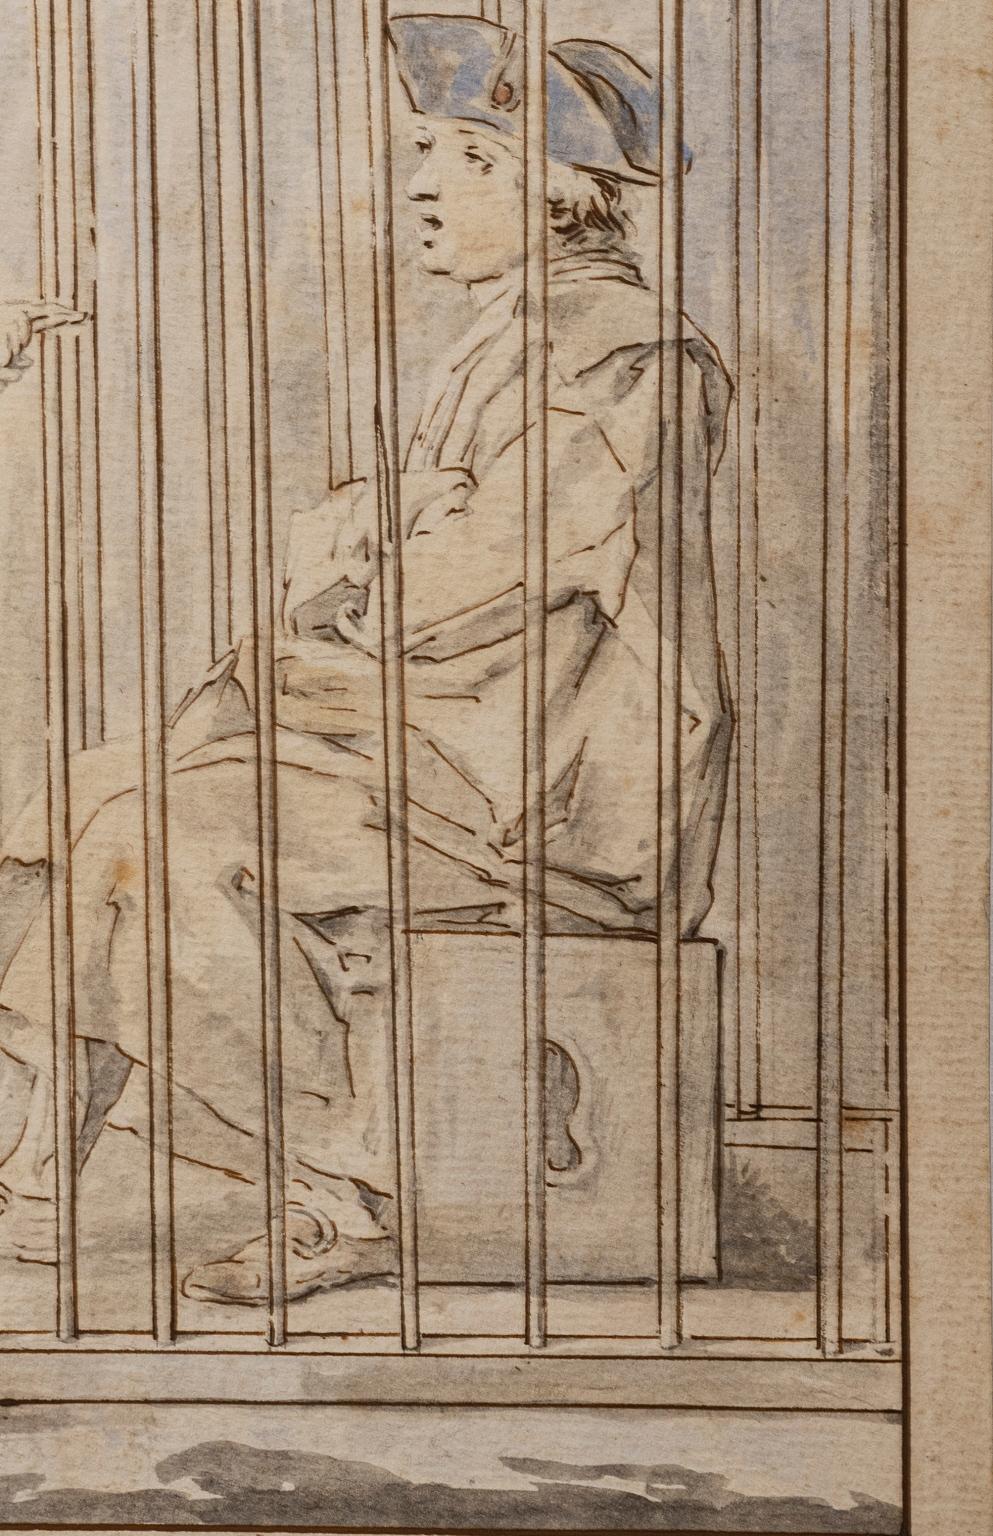 Aquarelle und Tusche auf Papier von Giuseppe Piattoli (Florenz 1748 - 1834). 
Es handelt sich um die Vorzeichnung einer der 40 von Carlo Lasinio (Treviso, 1759 - Pisa 1838) gedruckten Tafeln für die erste Serie der 